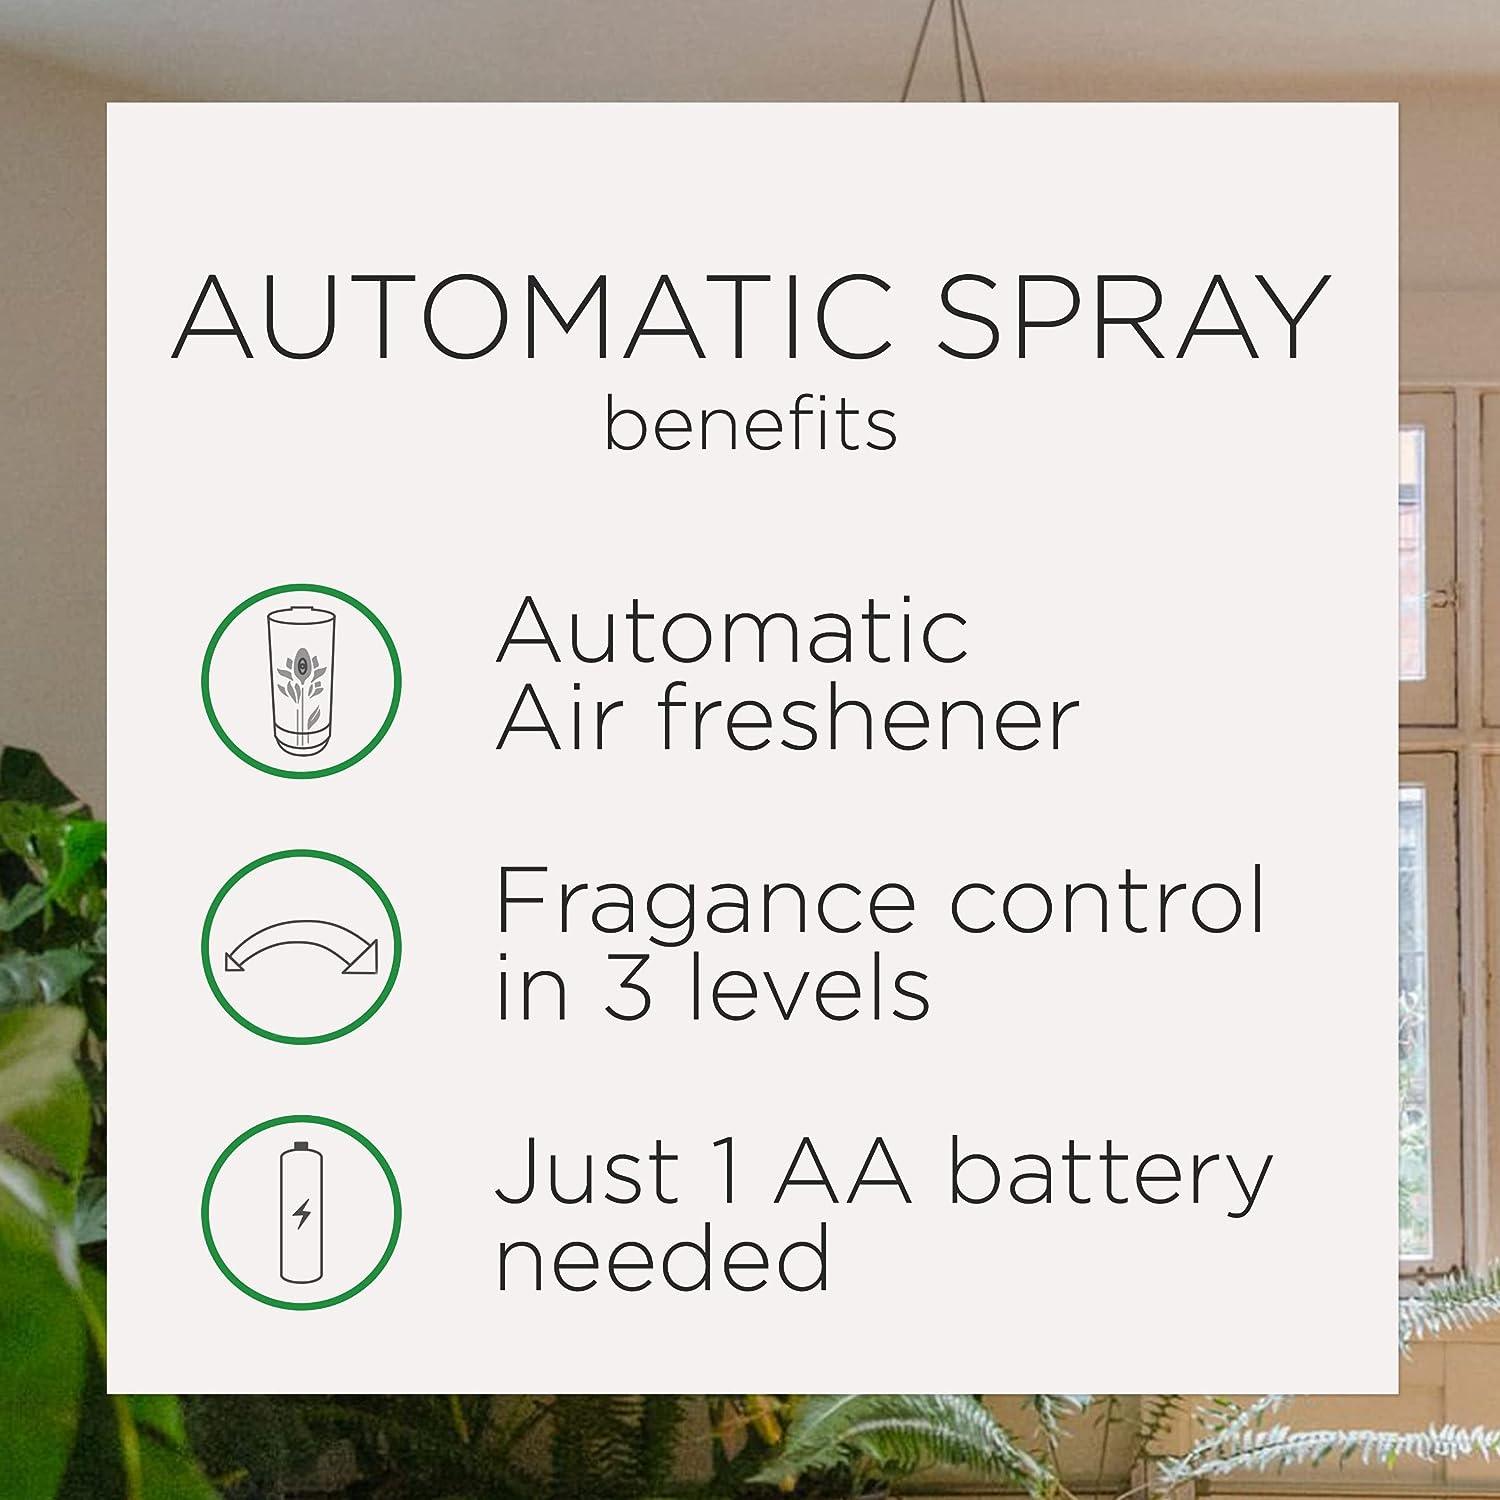 Air Wick repuestos en espray para ambientador automático olor veraniego 3 - VIRTUAL MUEBLES